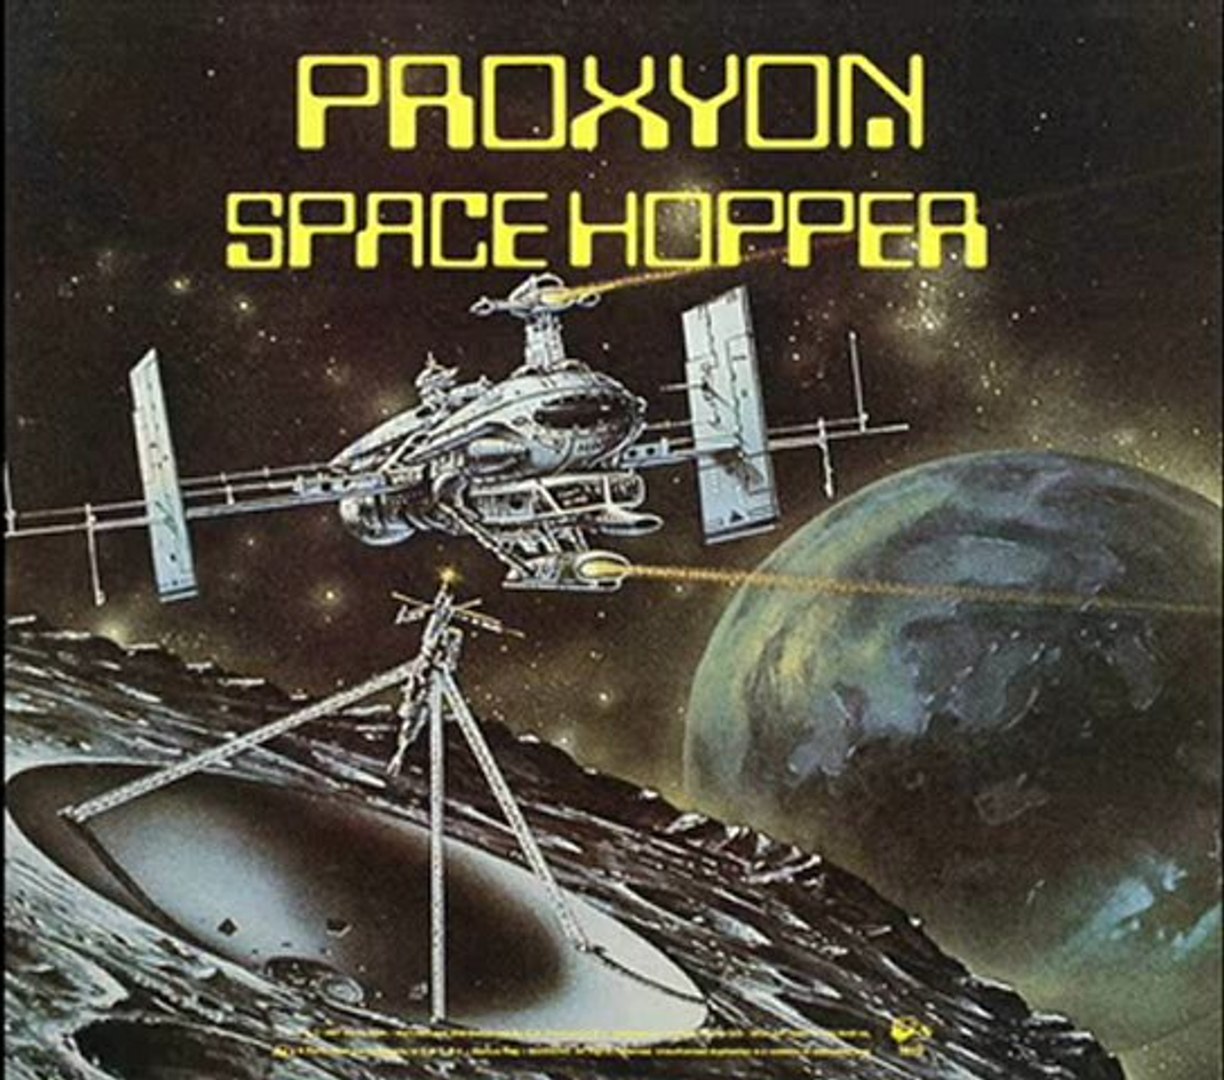 Proxyon - Space Hopper (space dub version)